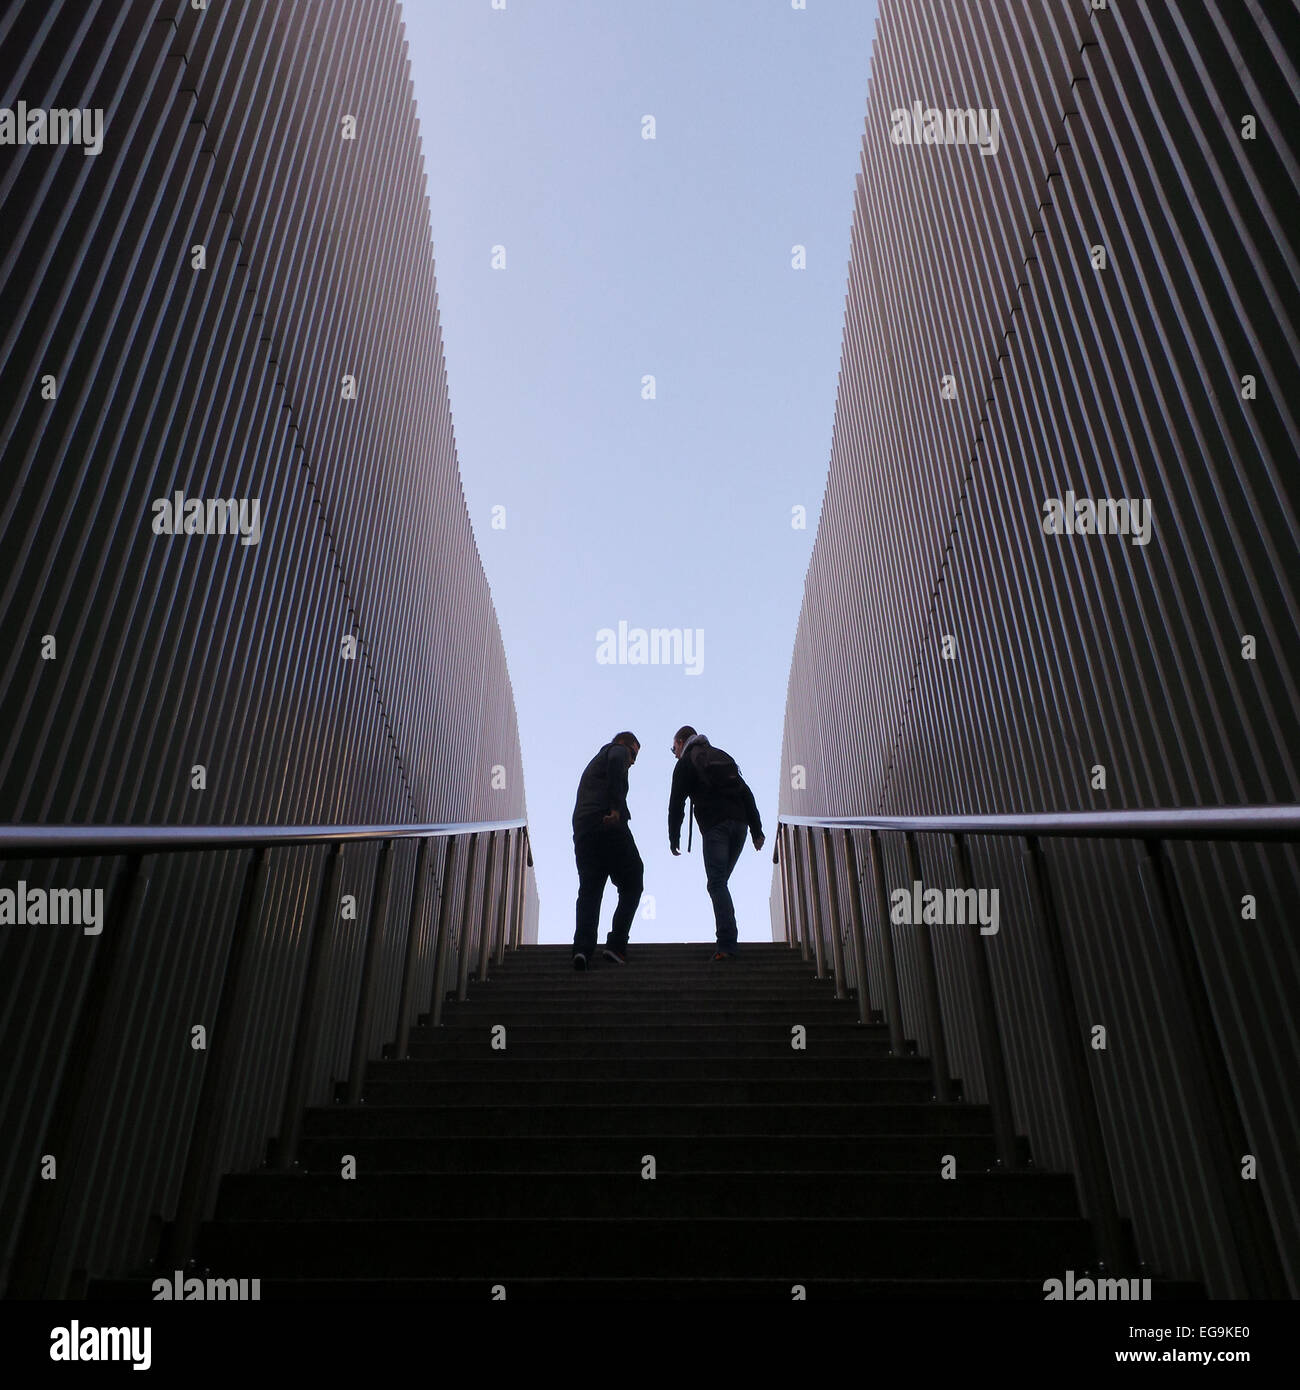 Imagen simétrica de dos personas de silueta en la parte superior de las escaleras, las paredes de los costados Foto de stock